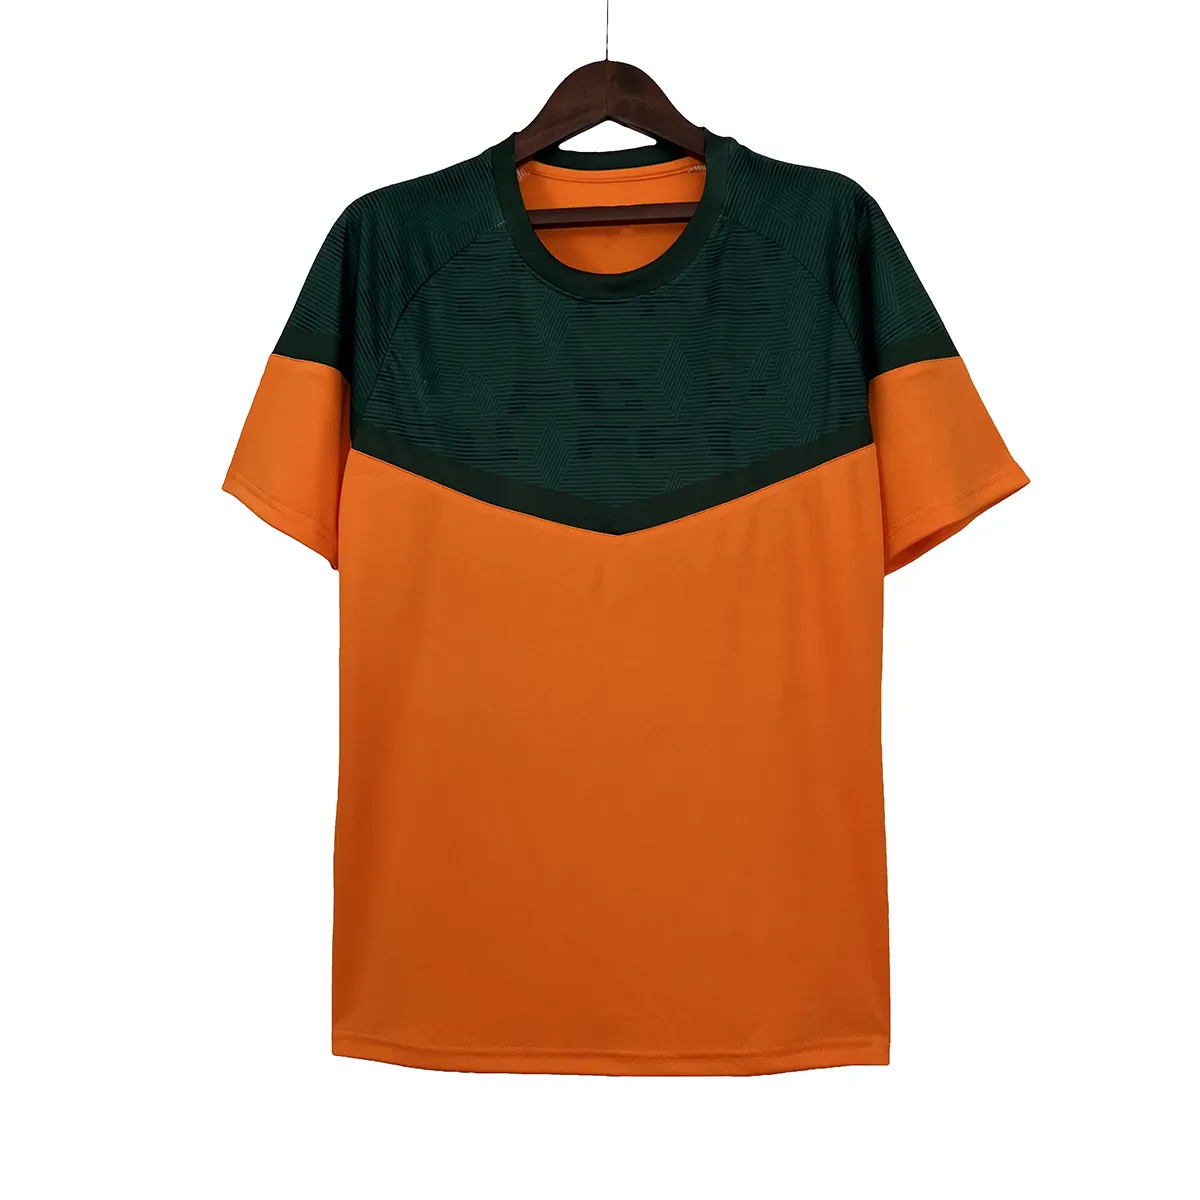 2023 youth soccer uniform camisas tailandesa football shirt custom sublimation fluminense soccer jersey